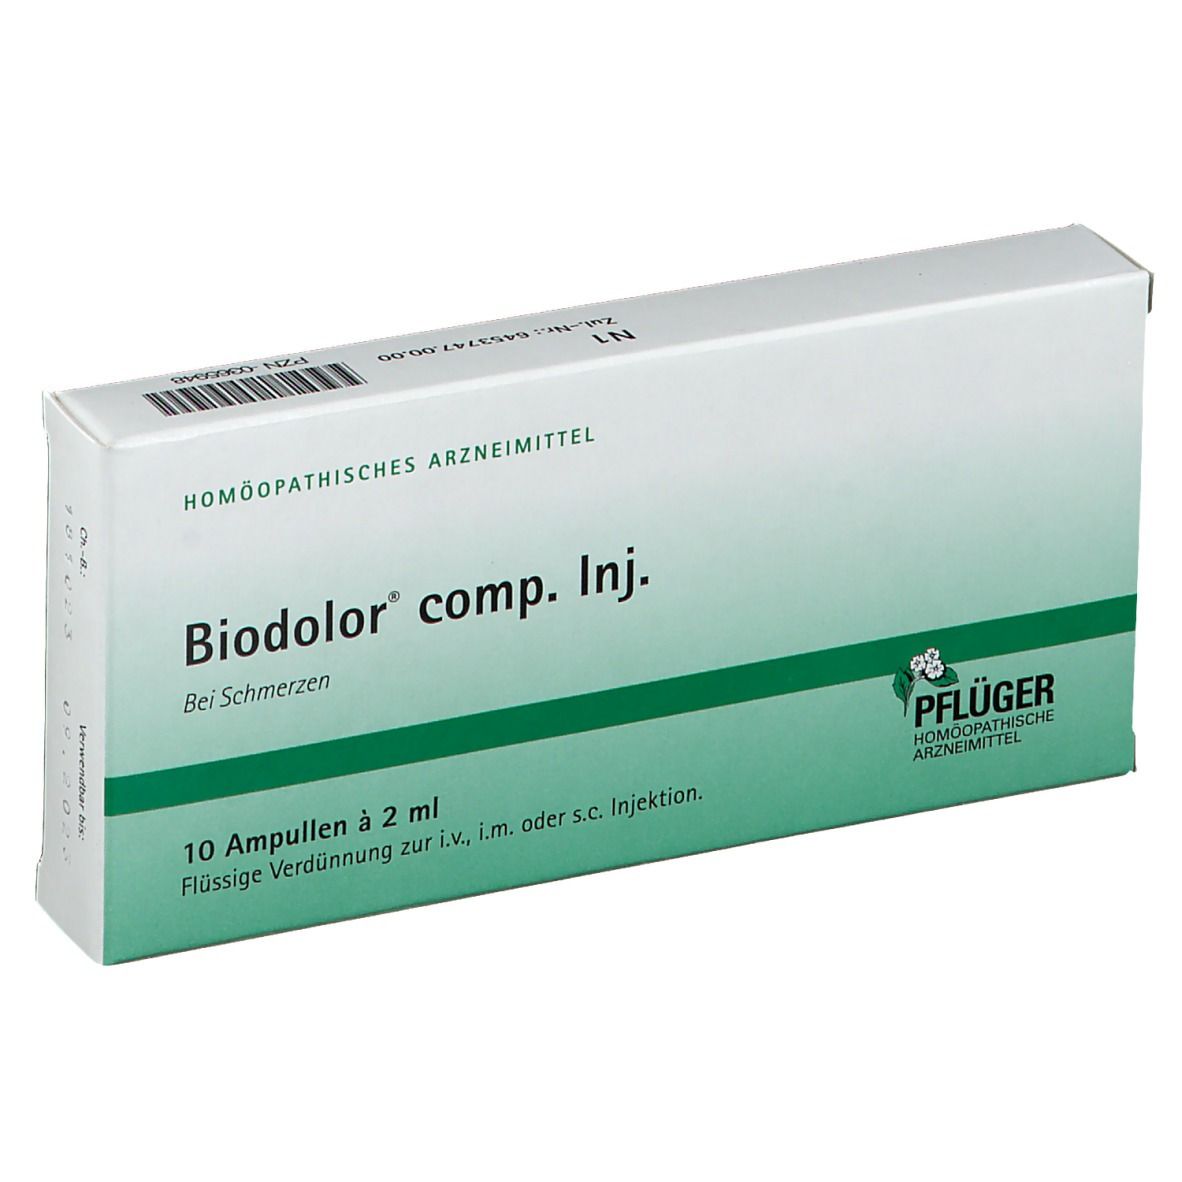 Biodolor® comp. Inj.